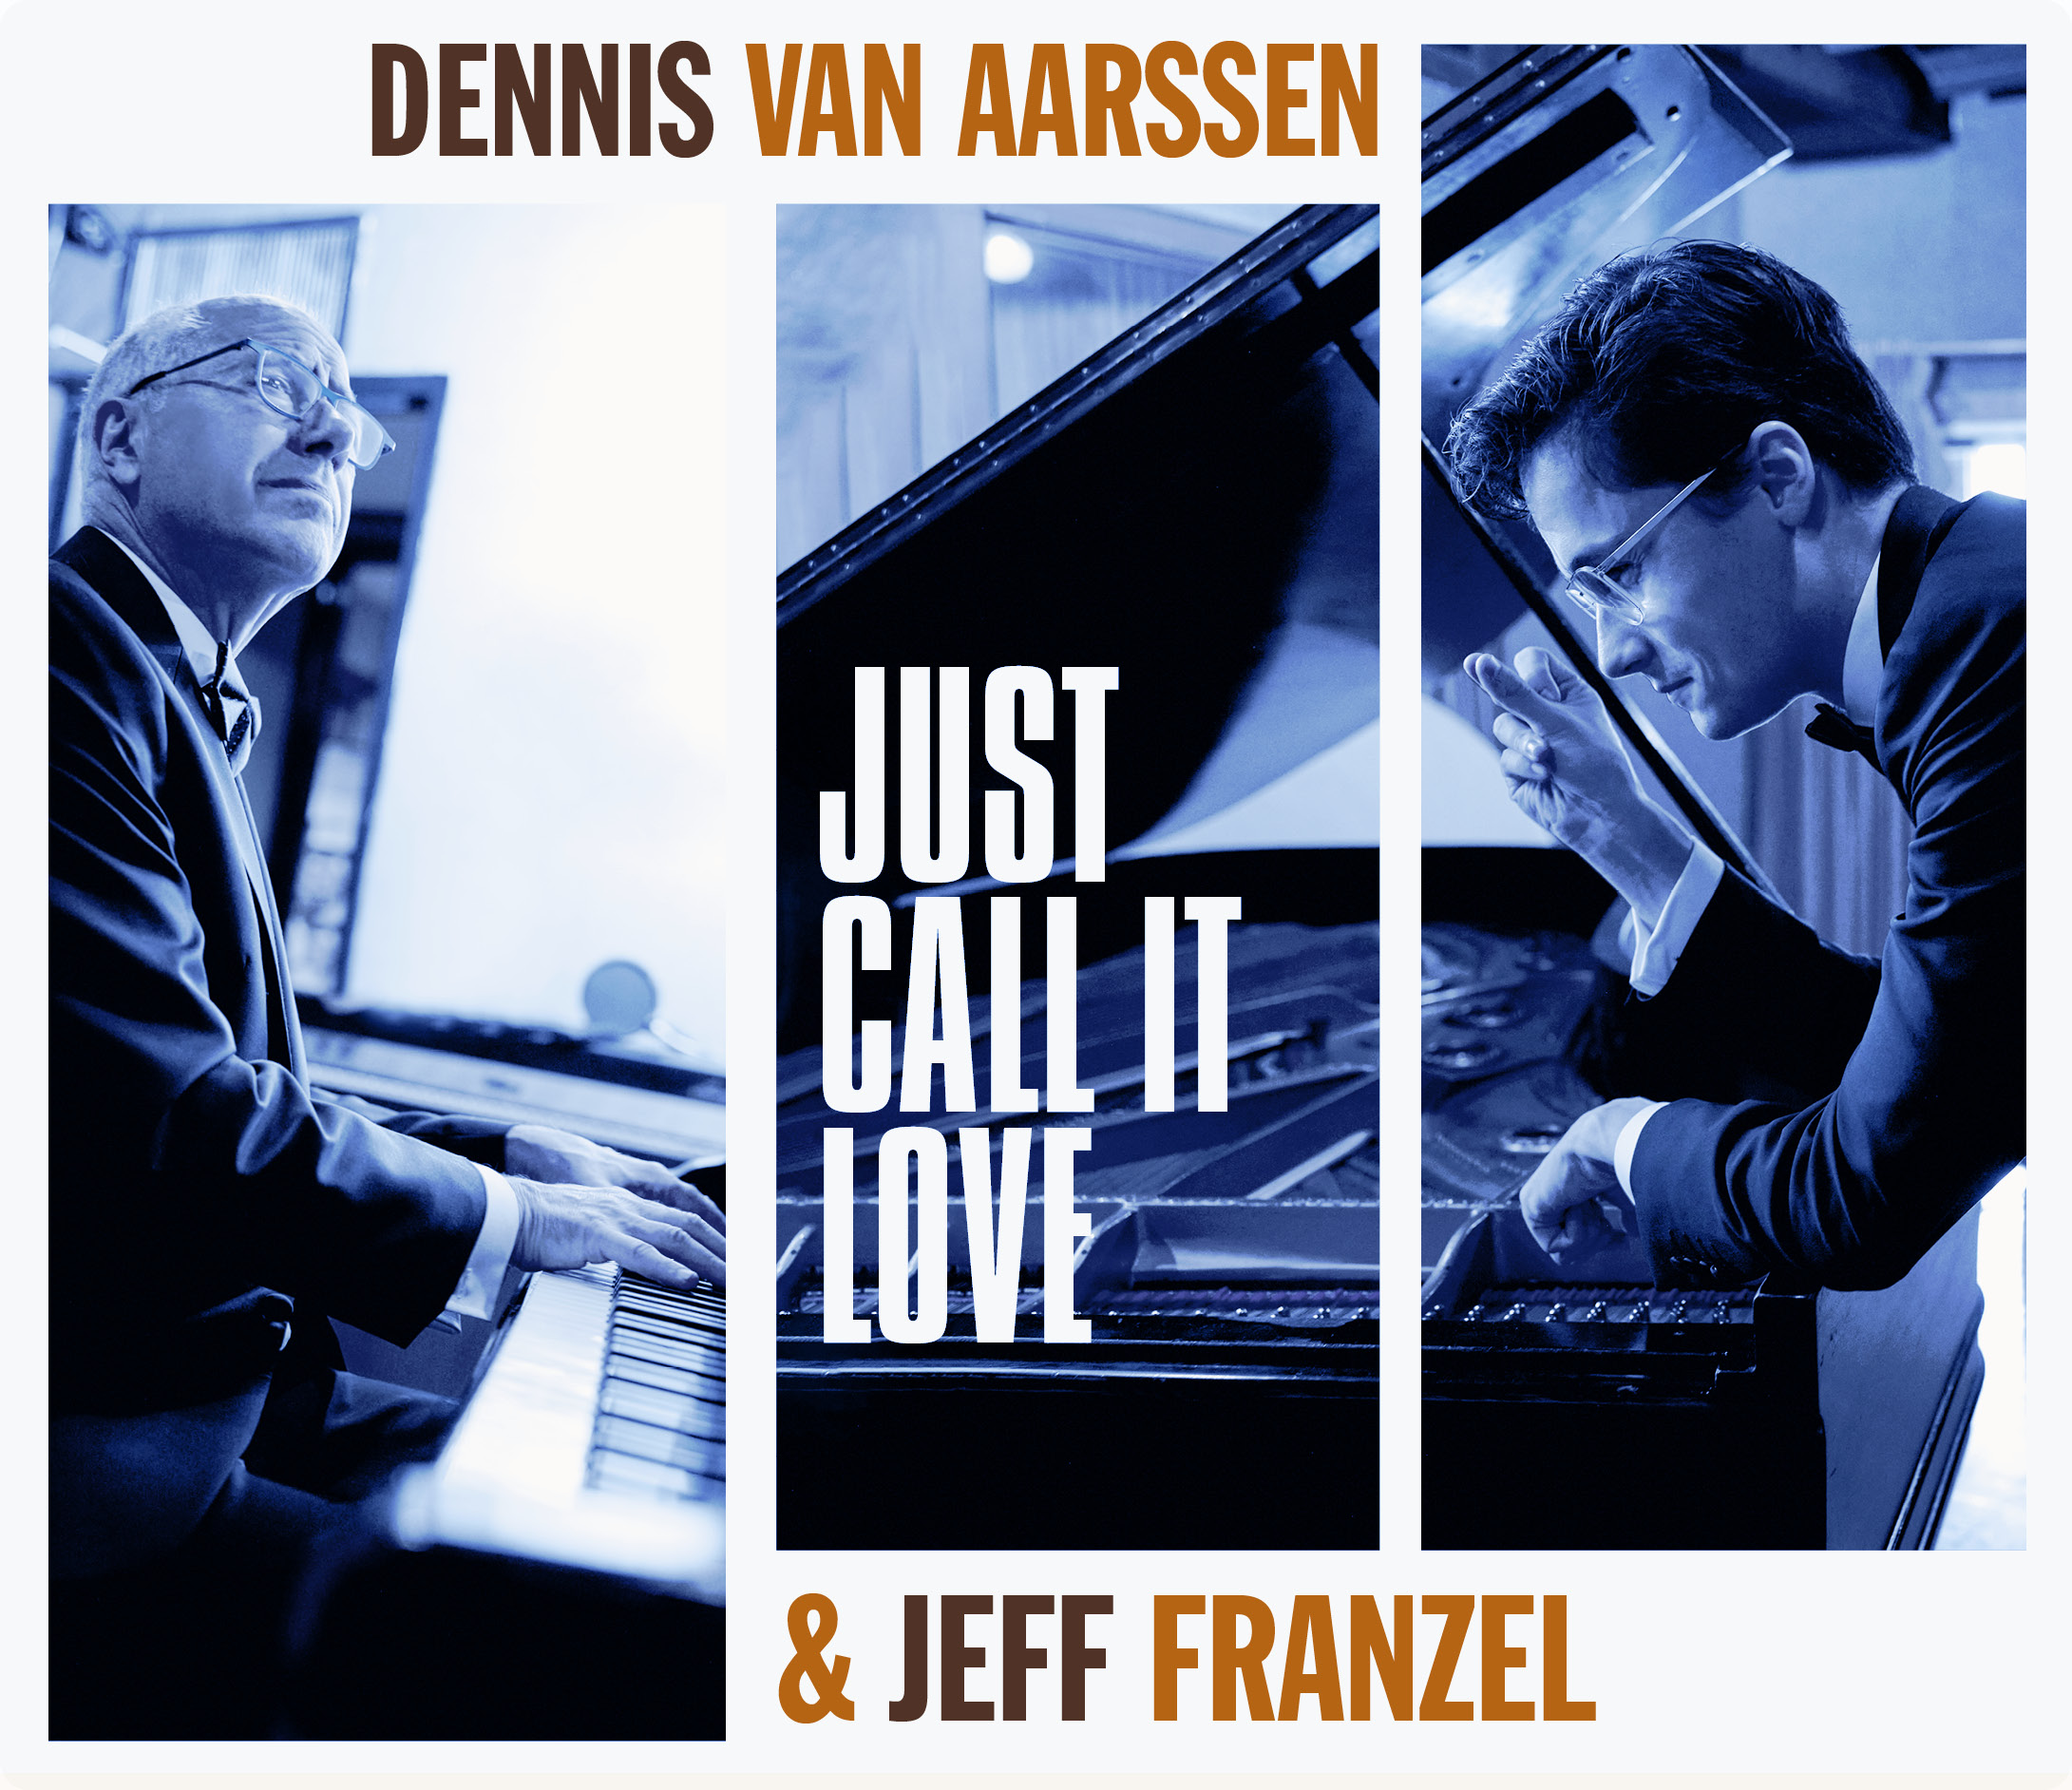 DENNIS van AARSSEN & JEFF FRANZEL - JUST CALL IT LOVE (CD EN LP)